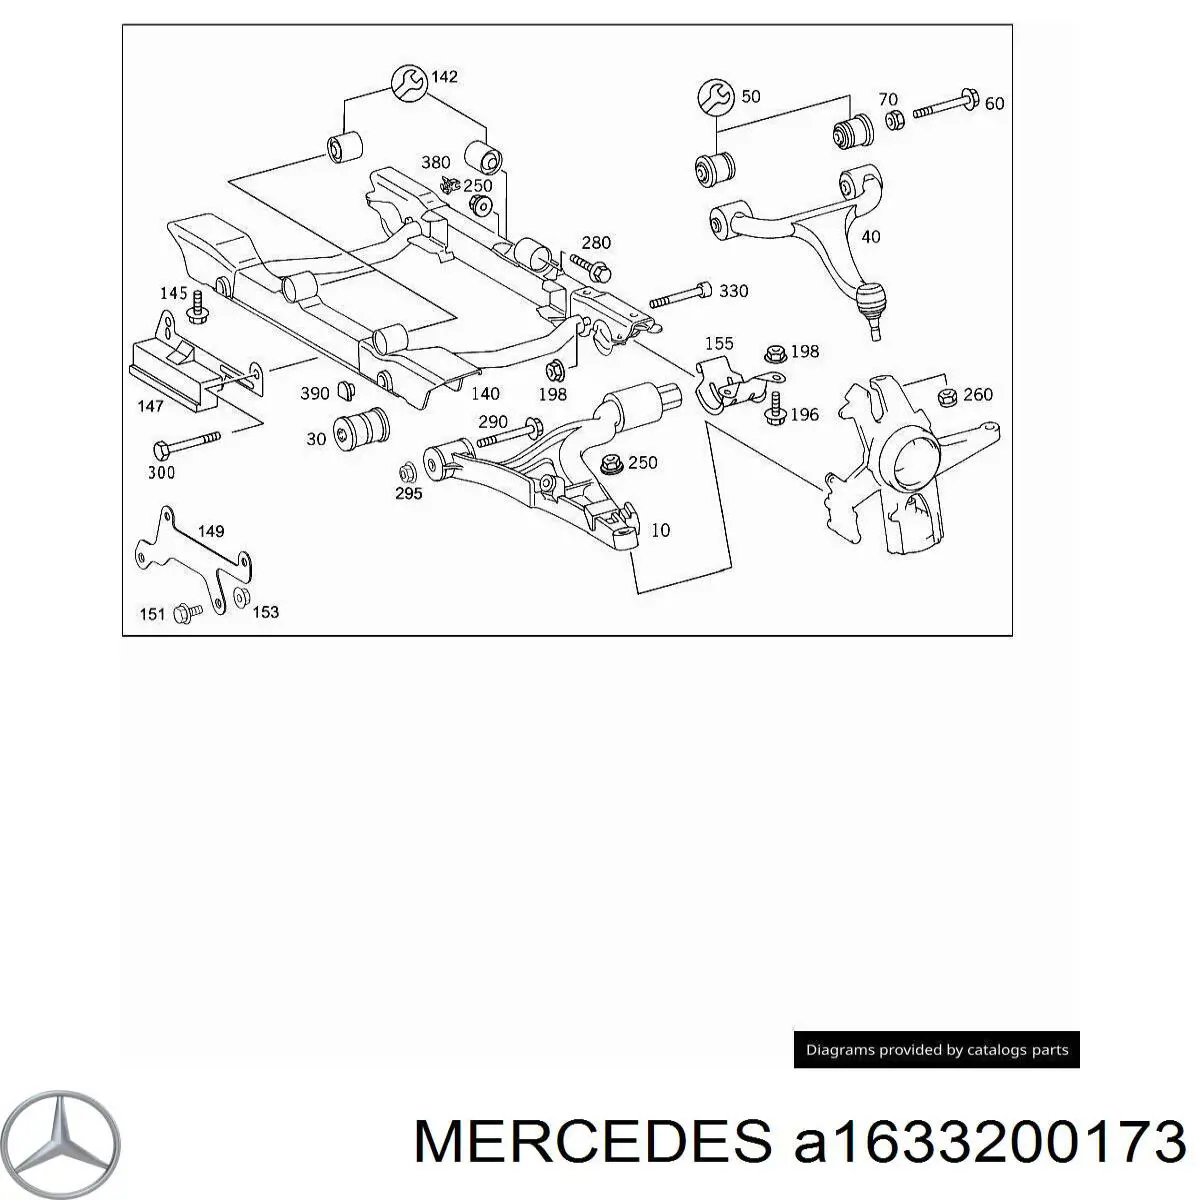 Soporte de torsion delantero, derecho para Mercedes ML/GLE (W163)